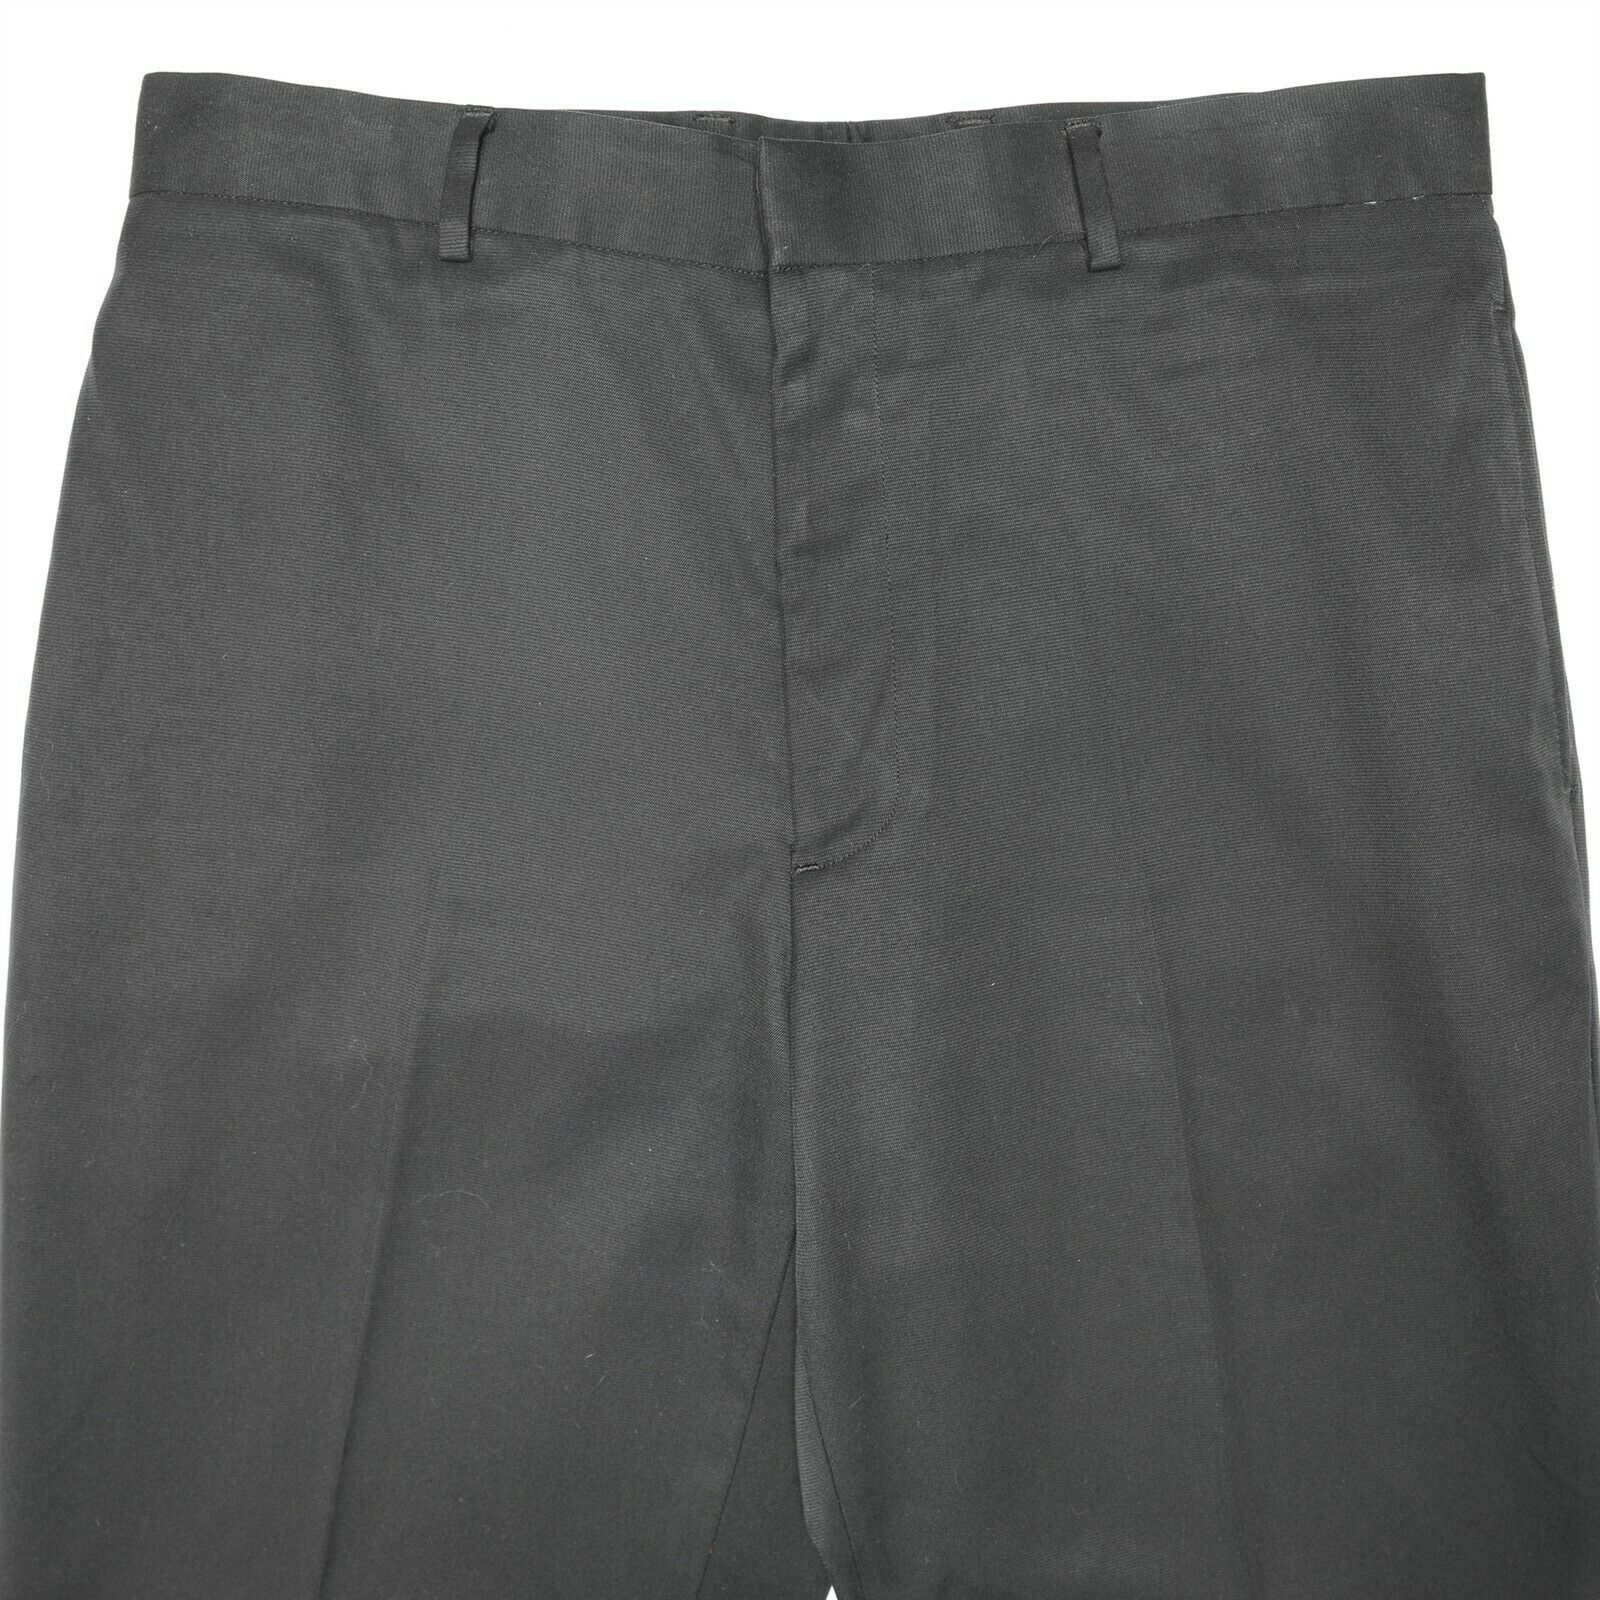 Men Dress Pants louis Raphael Size 33X30 Pleated 